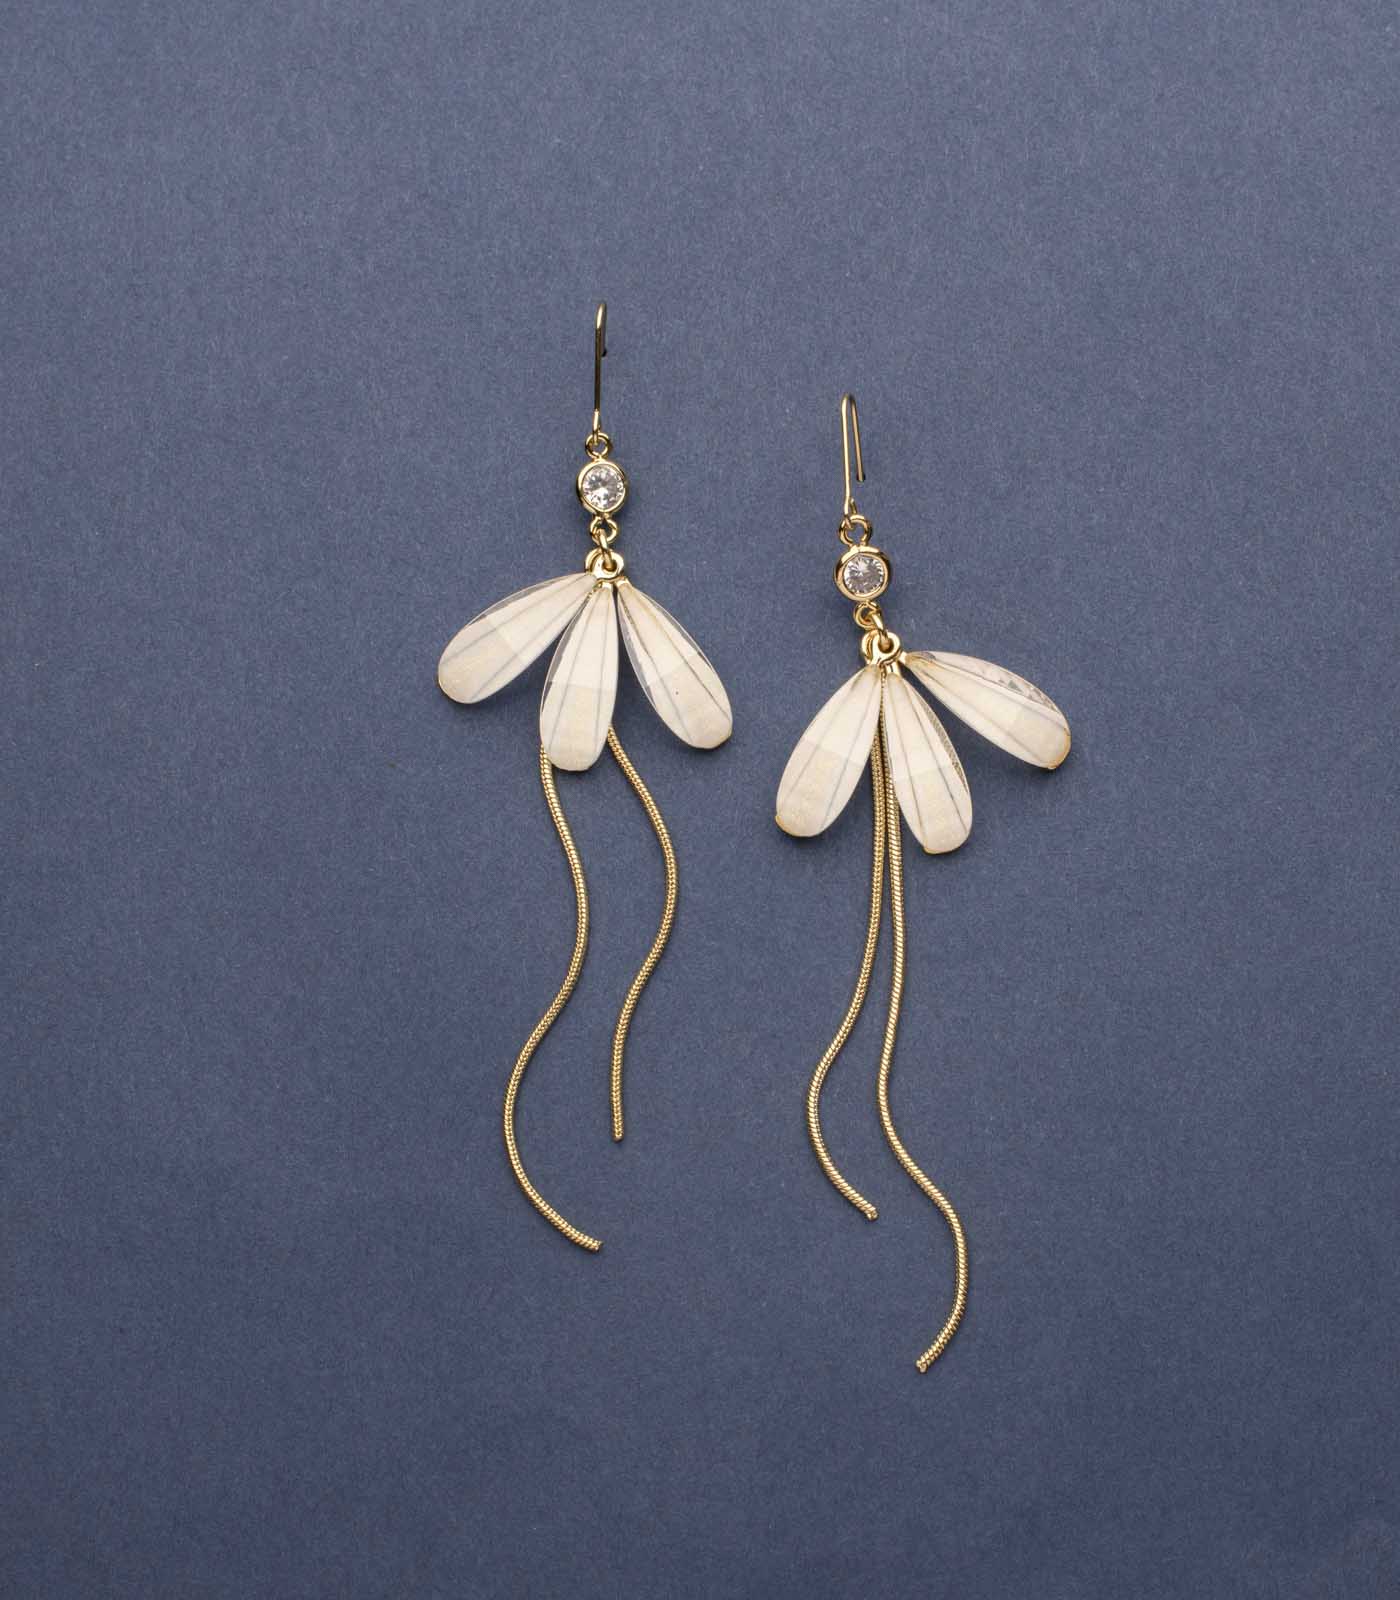 Flying Golden Fireflies Of Pearls Earrings (Brass)